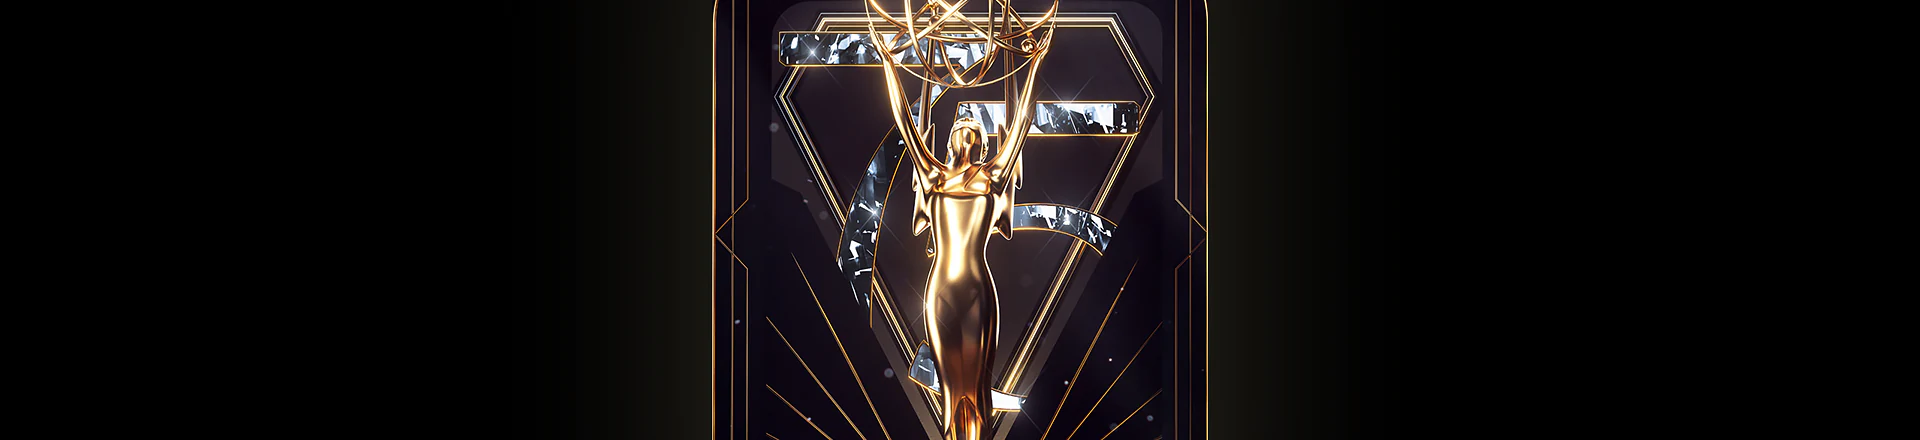 System Riedel Bolero laureatem 75. edycji nagród Emmy